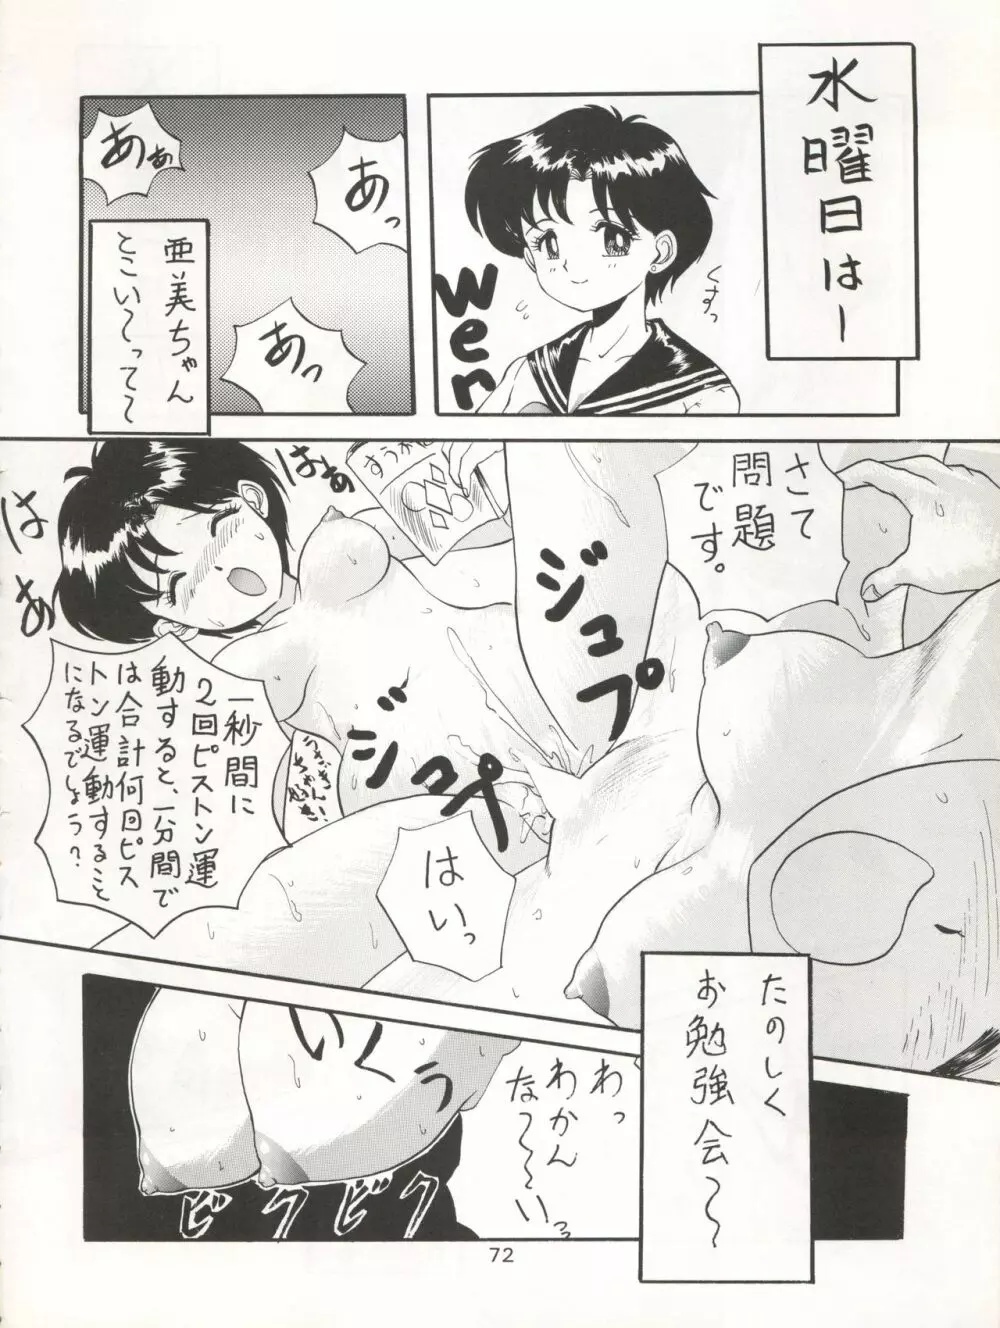 KATZE 7 上巻 - page73